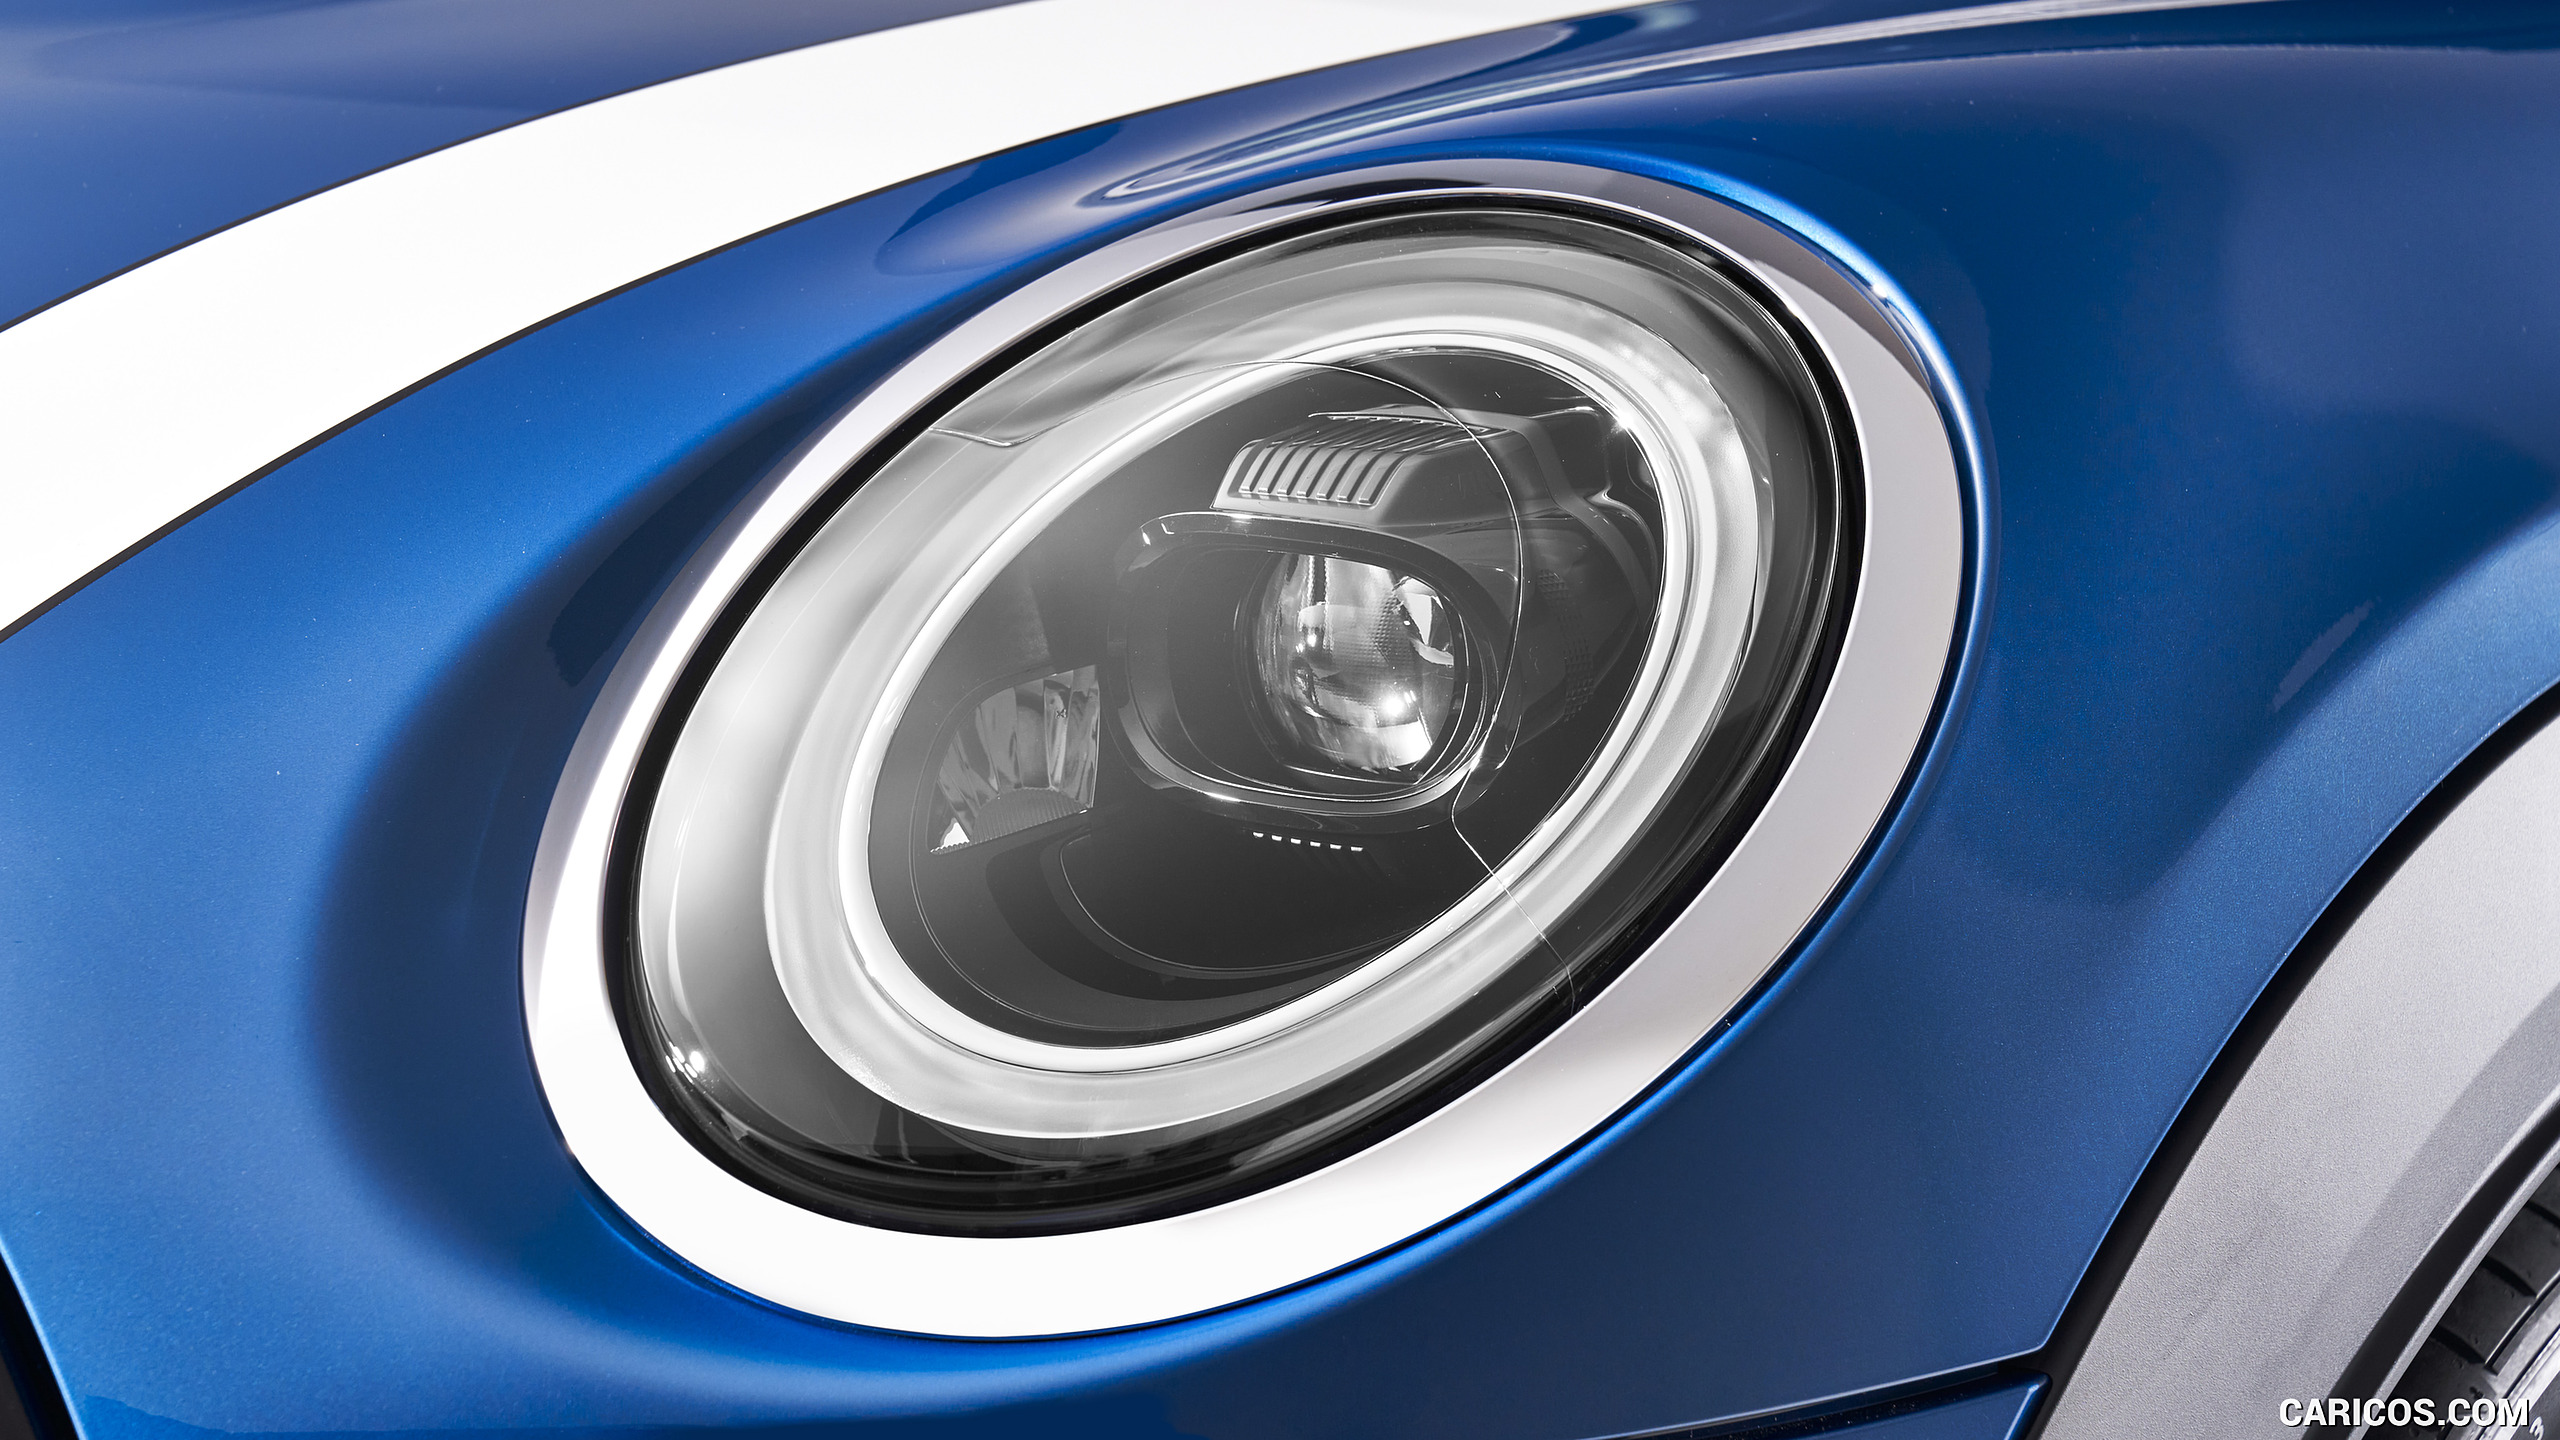 2022 MINI Cooper S Hardtop 4 Door - Headlight, #16 of 33